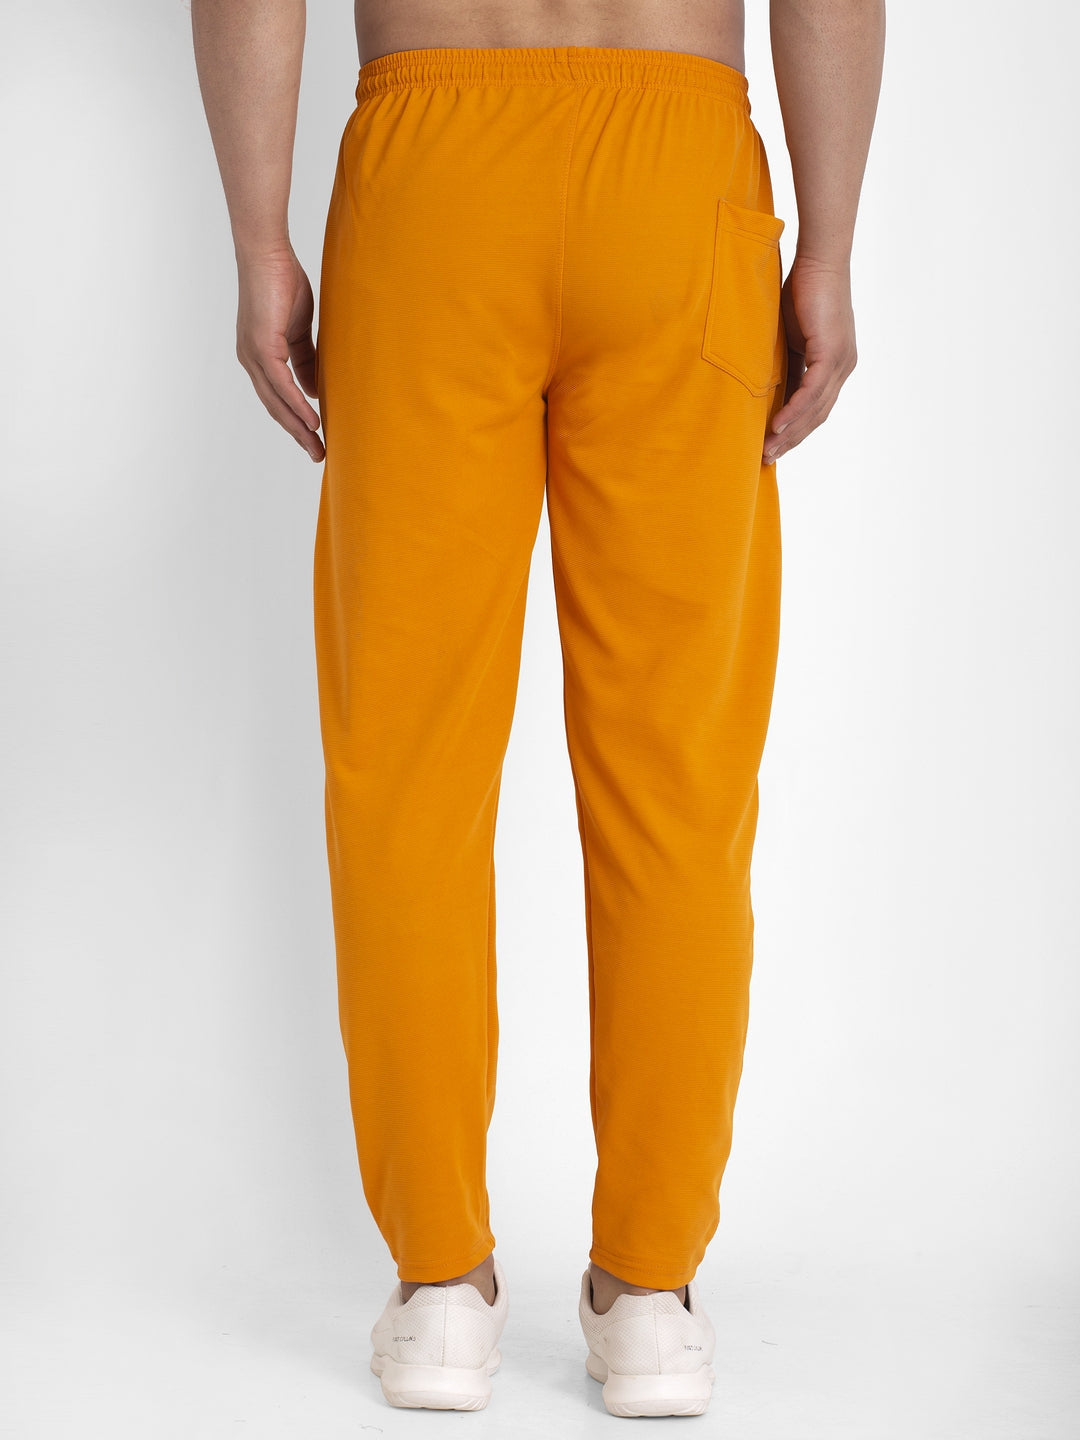 Men's Mustard Solid Track Pants ( JOG 014Mustard ) - Jainish